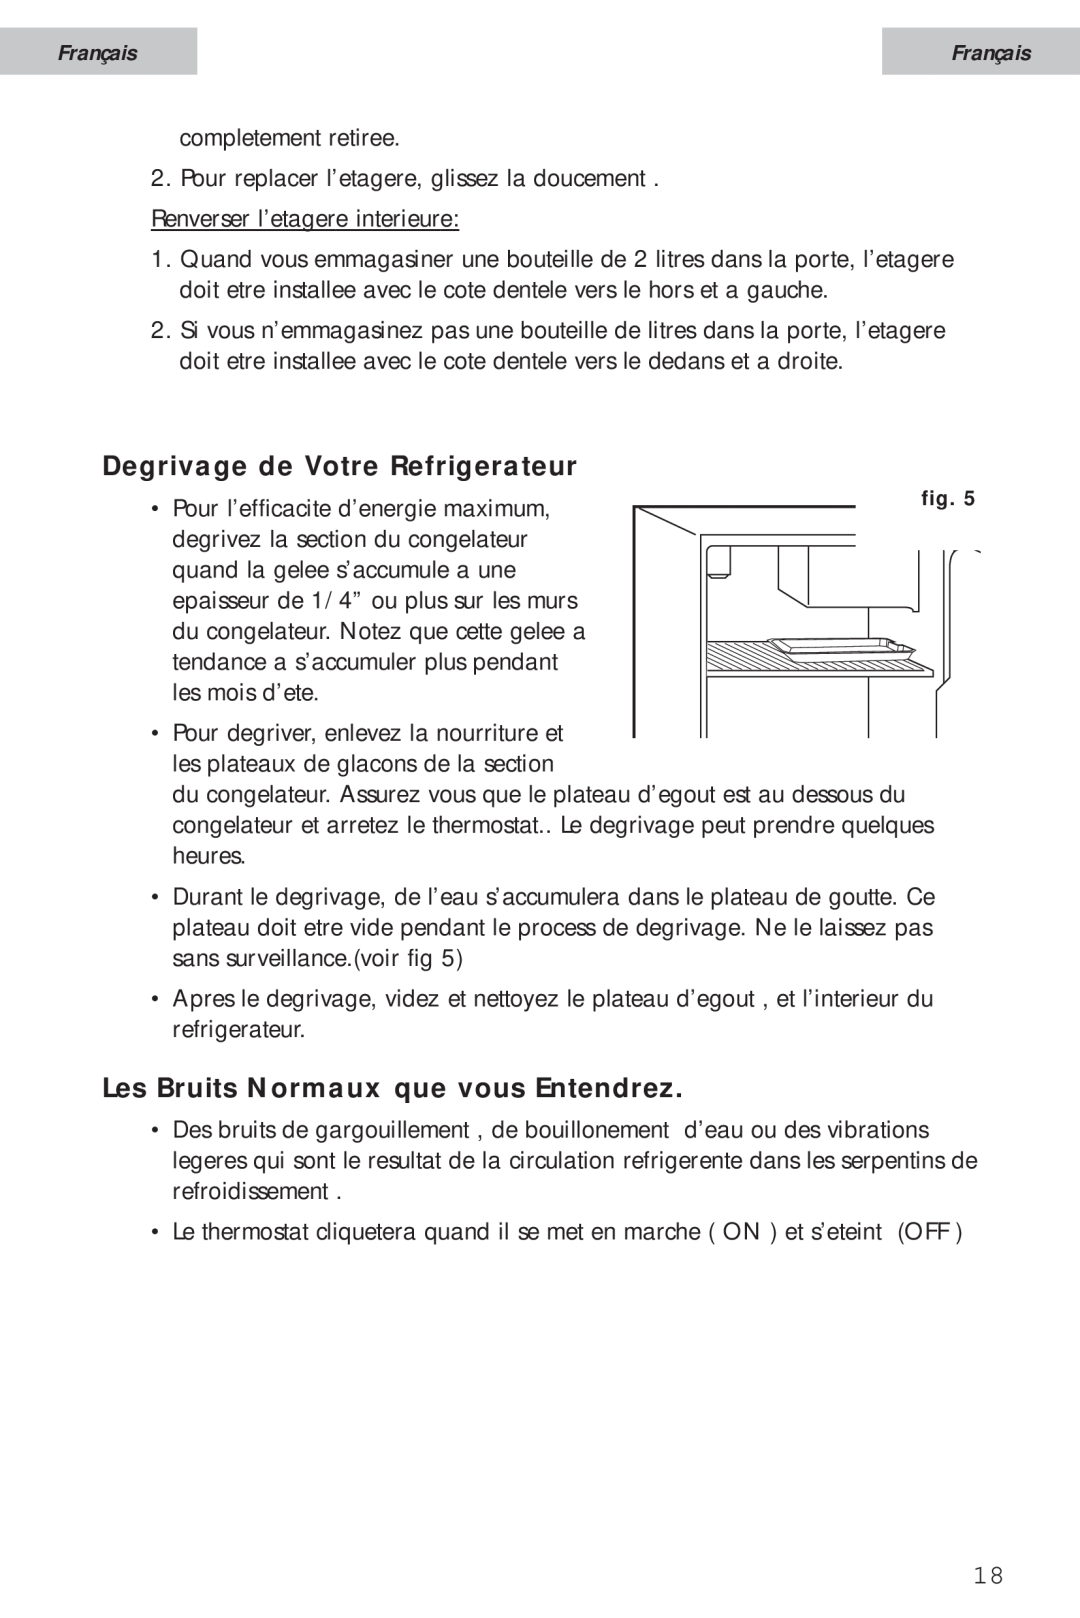 Haier HSA02WNC user manual Degrivage de Votre Refrigerateur, Les Bruits Normaux que vous Entendrez, Français 